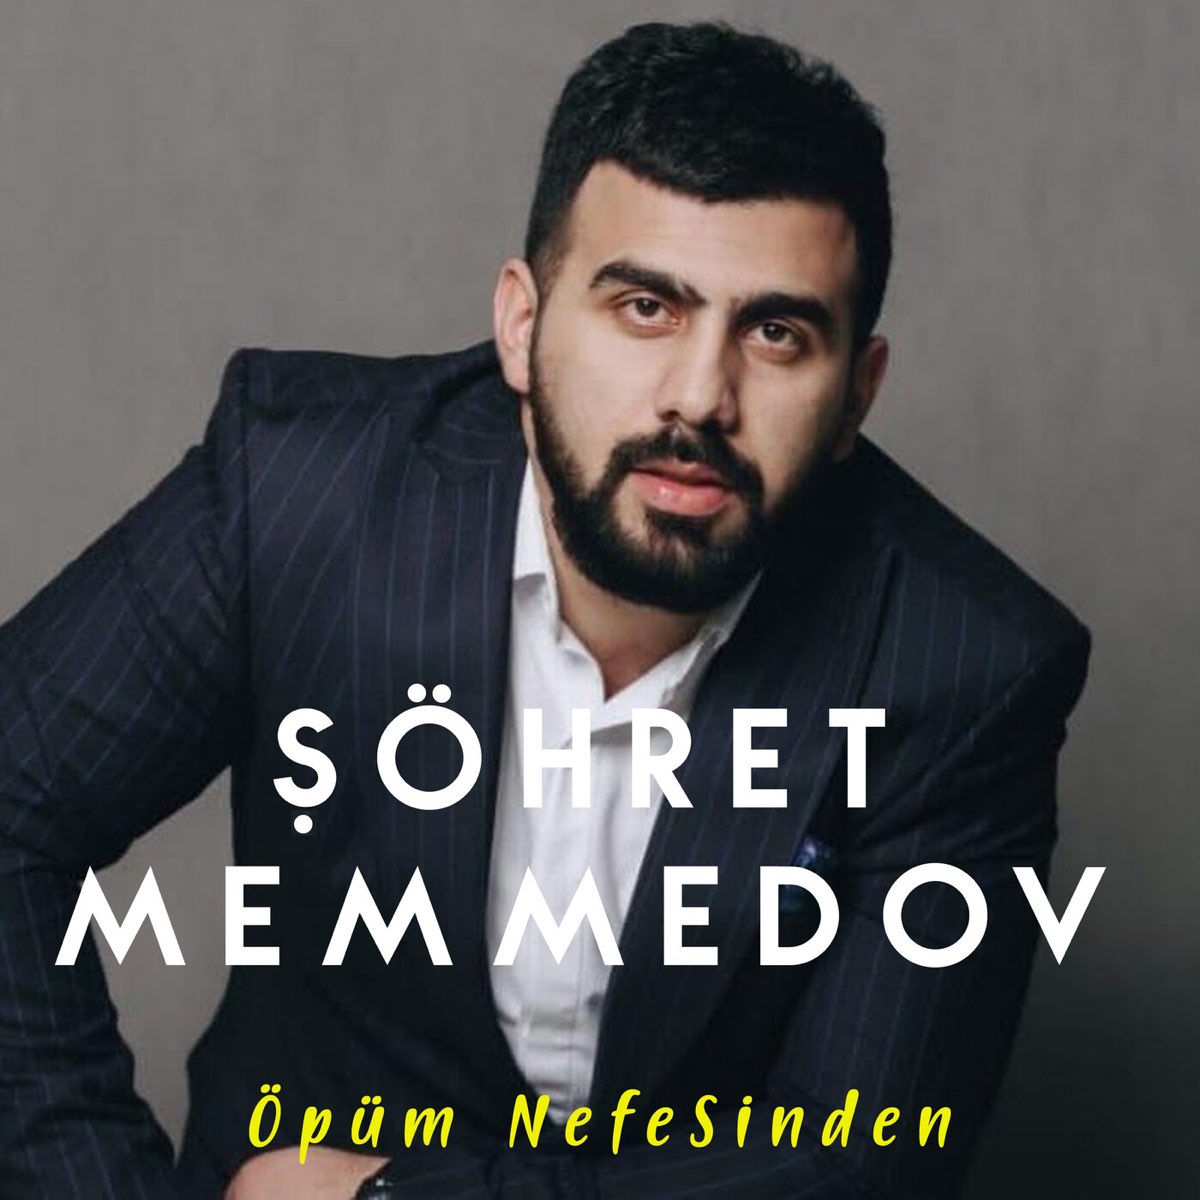 Öpüm Nefesinden - Single - Album by Şöhret Memmedov - Apple Music